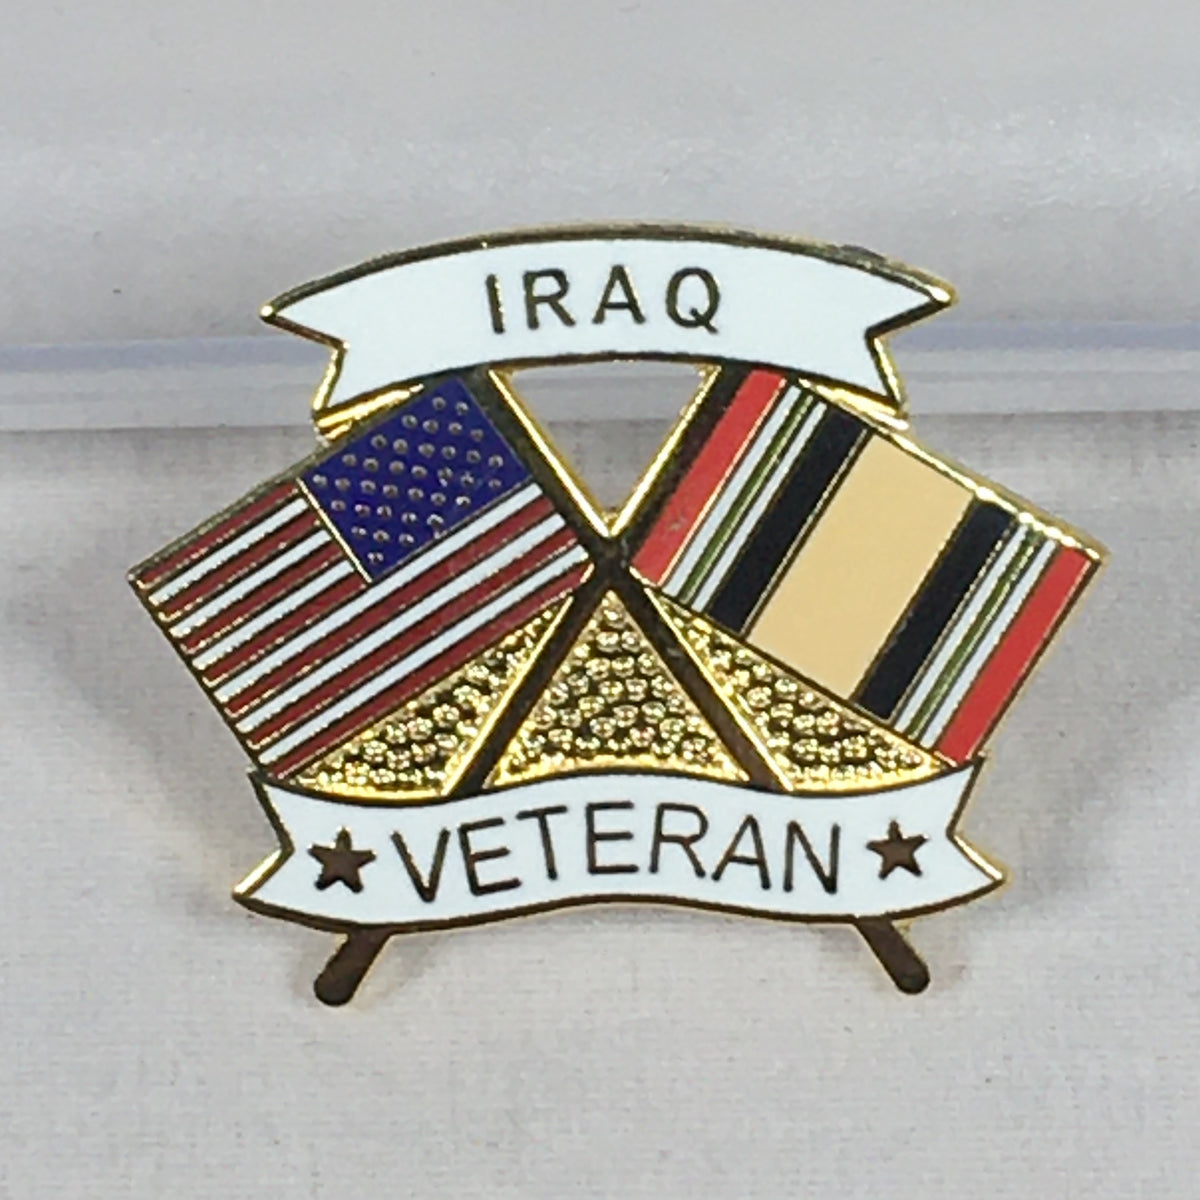 Iraqi Veteran Flag Pin